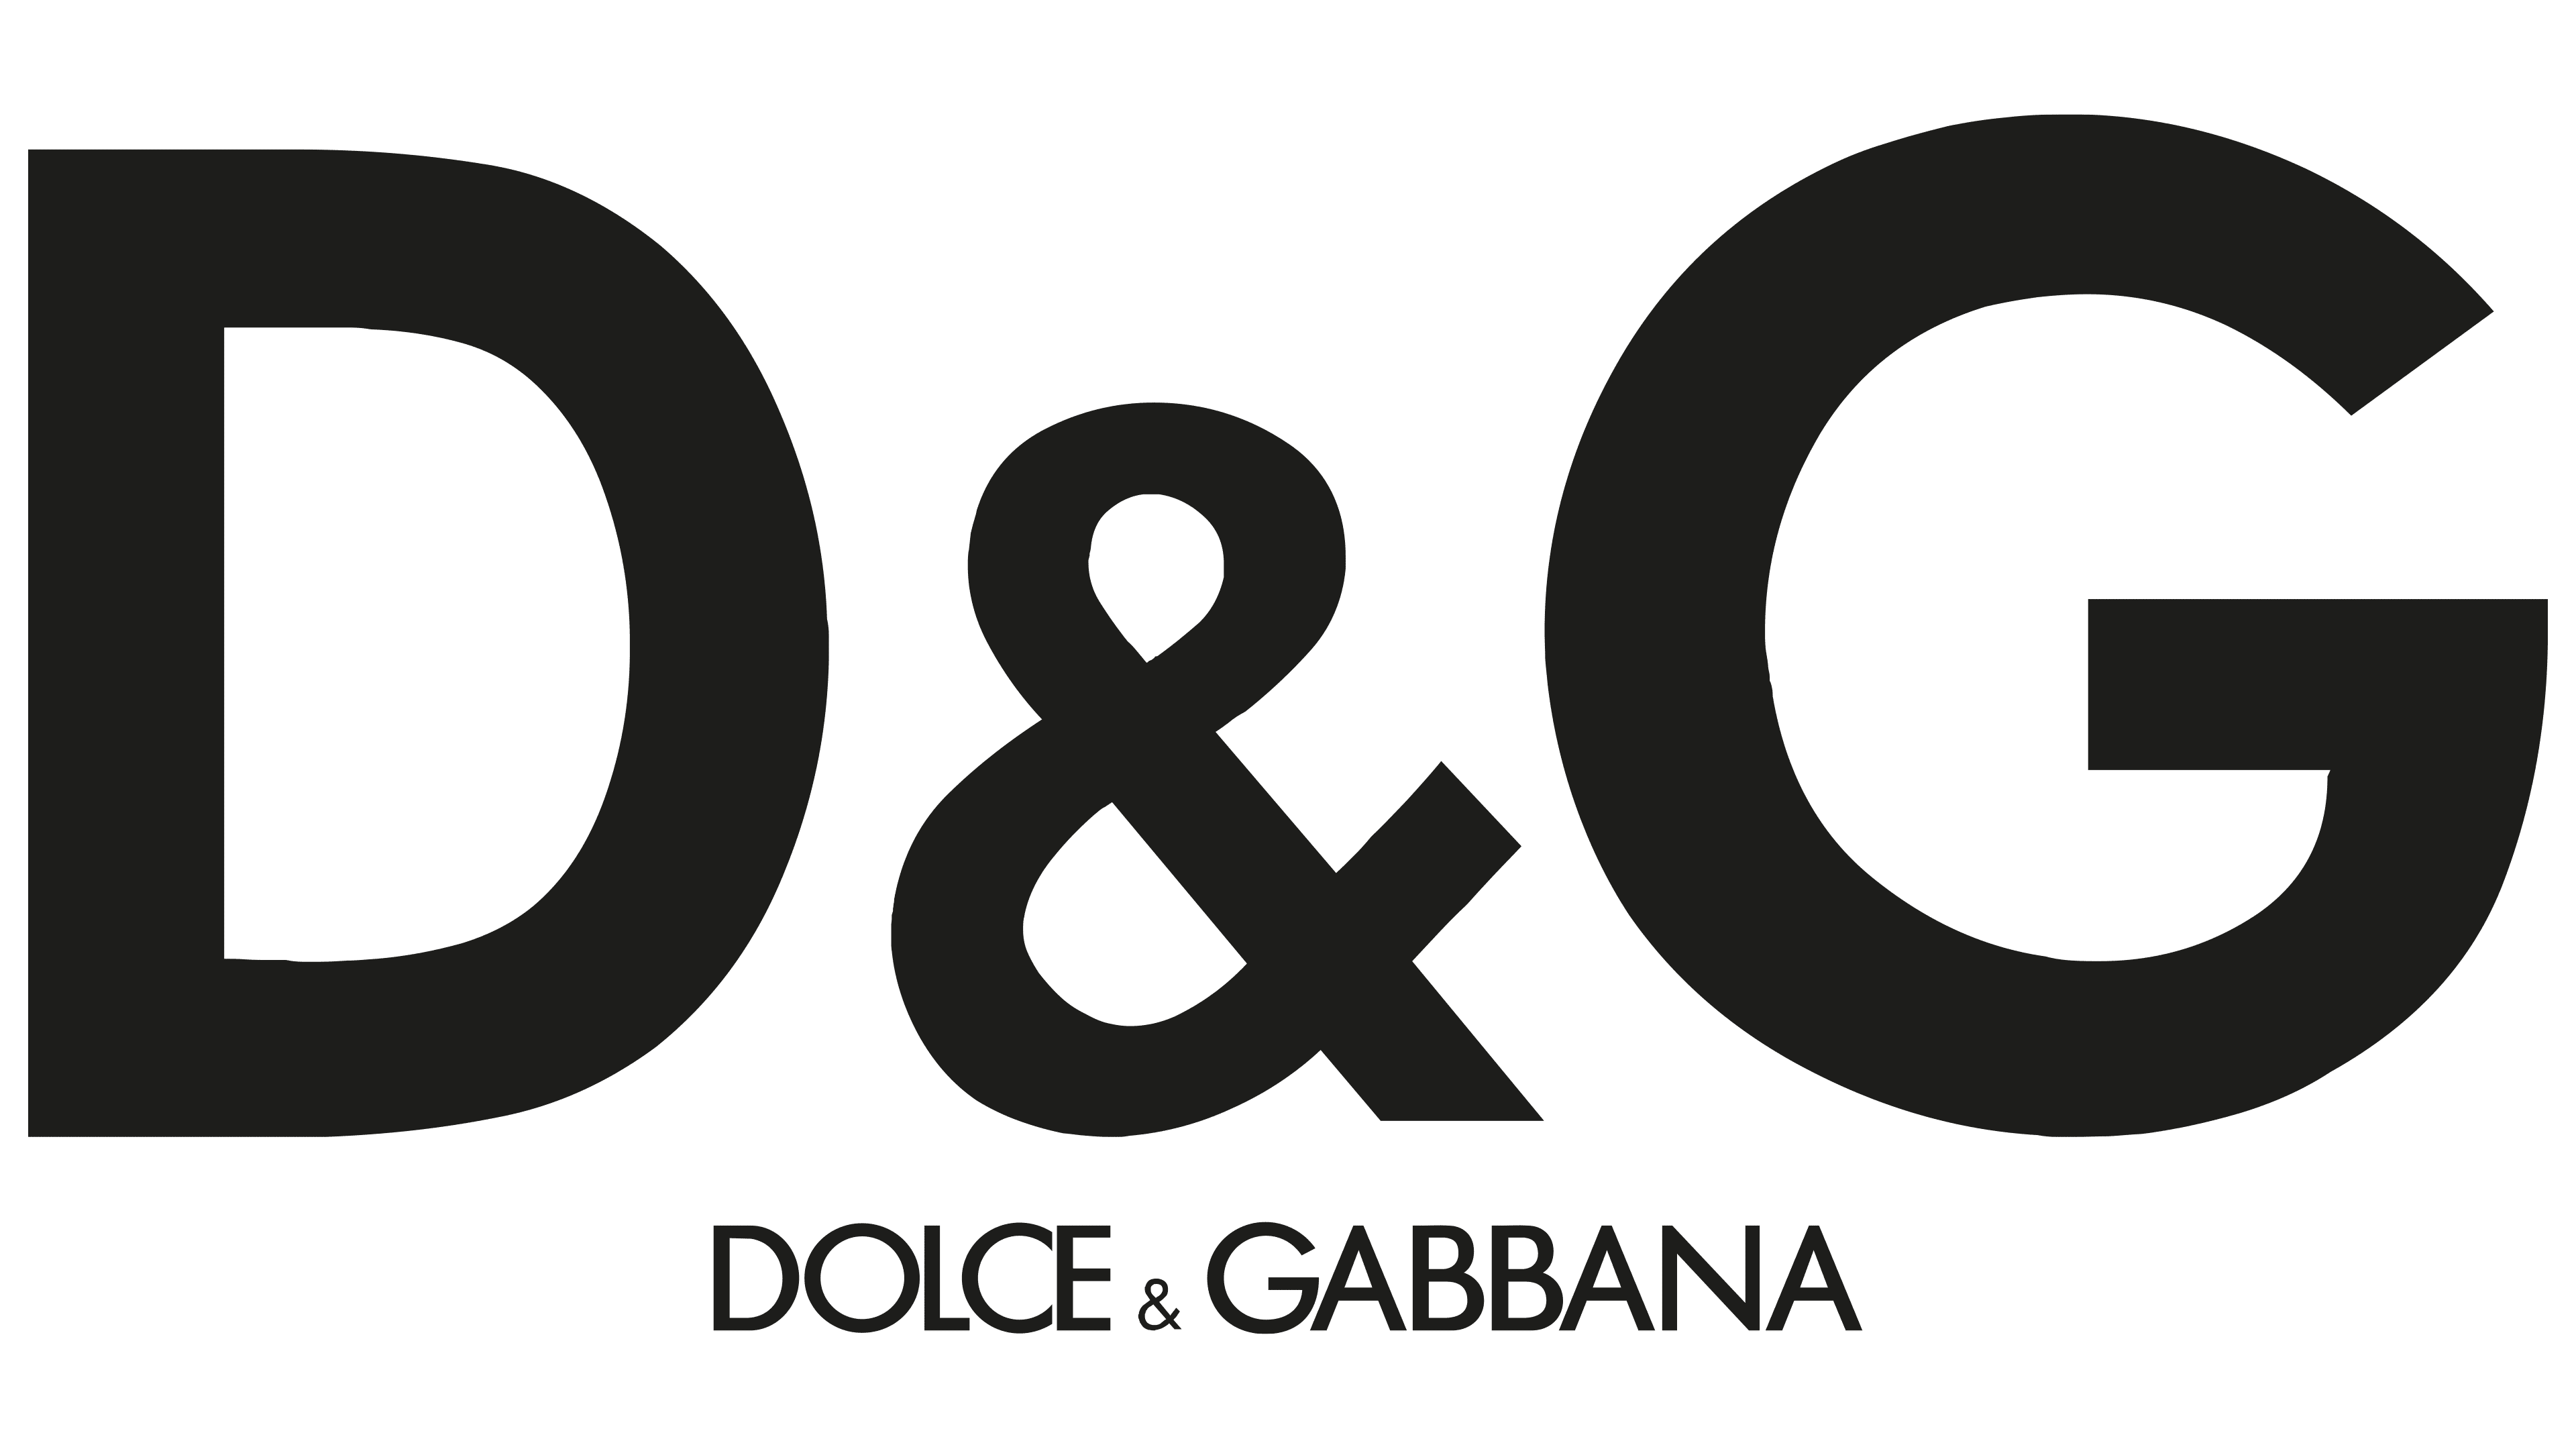 Dolce & Gabbana Logo - Storia e significato dell'emblema del marchio